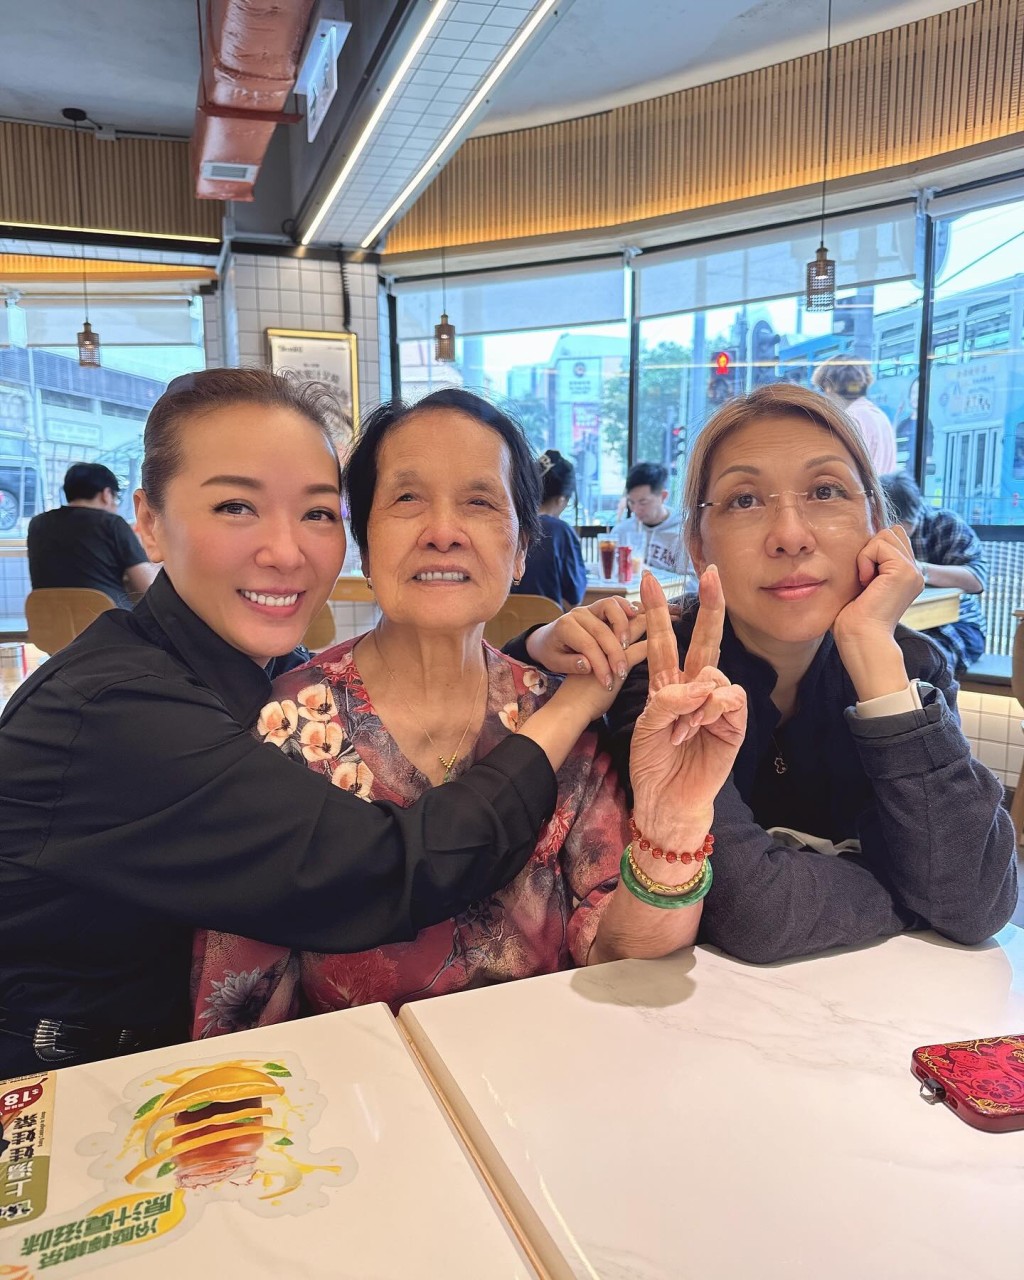 郭少芸分享与九旬妈咪和家姐在茶餐厅齐齐叹红豆冰的照片。